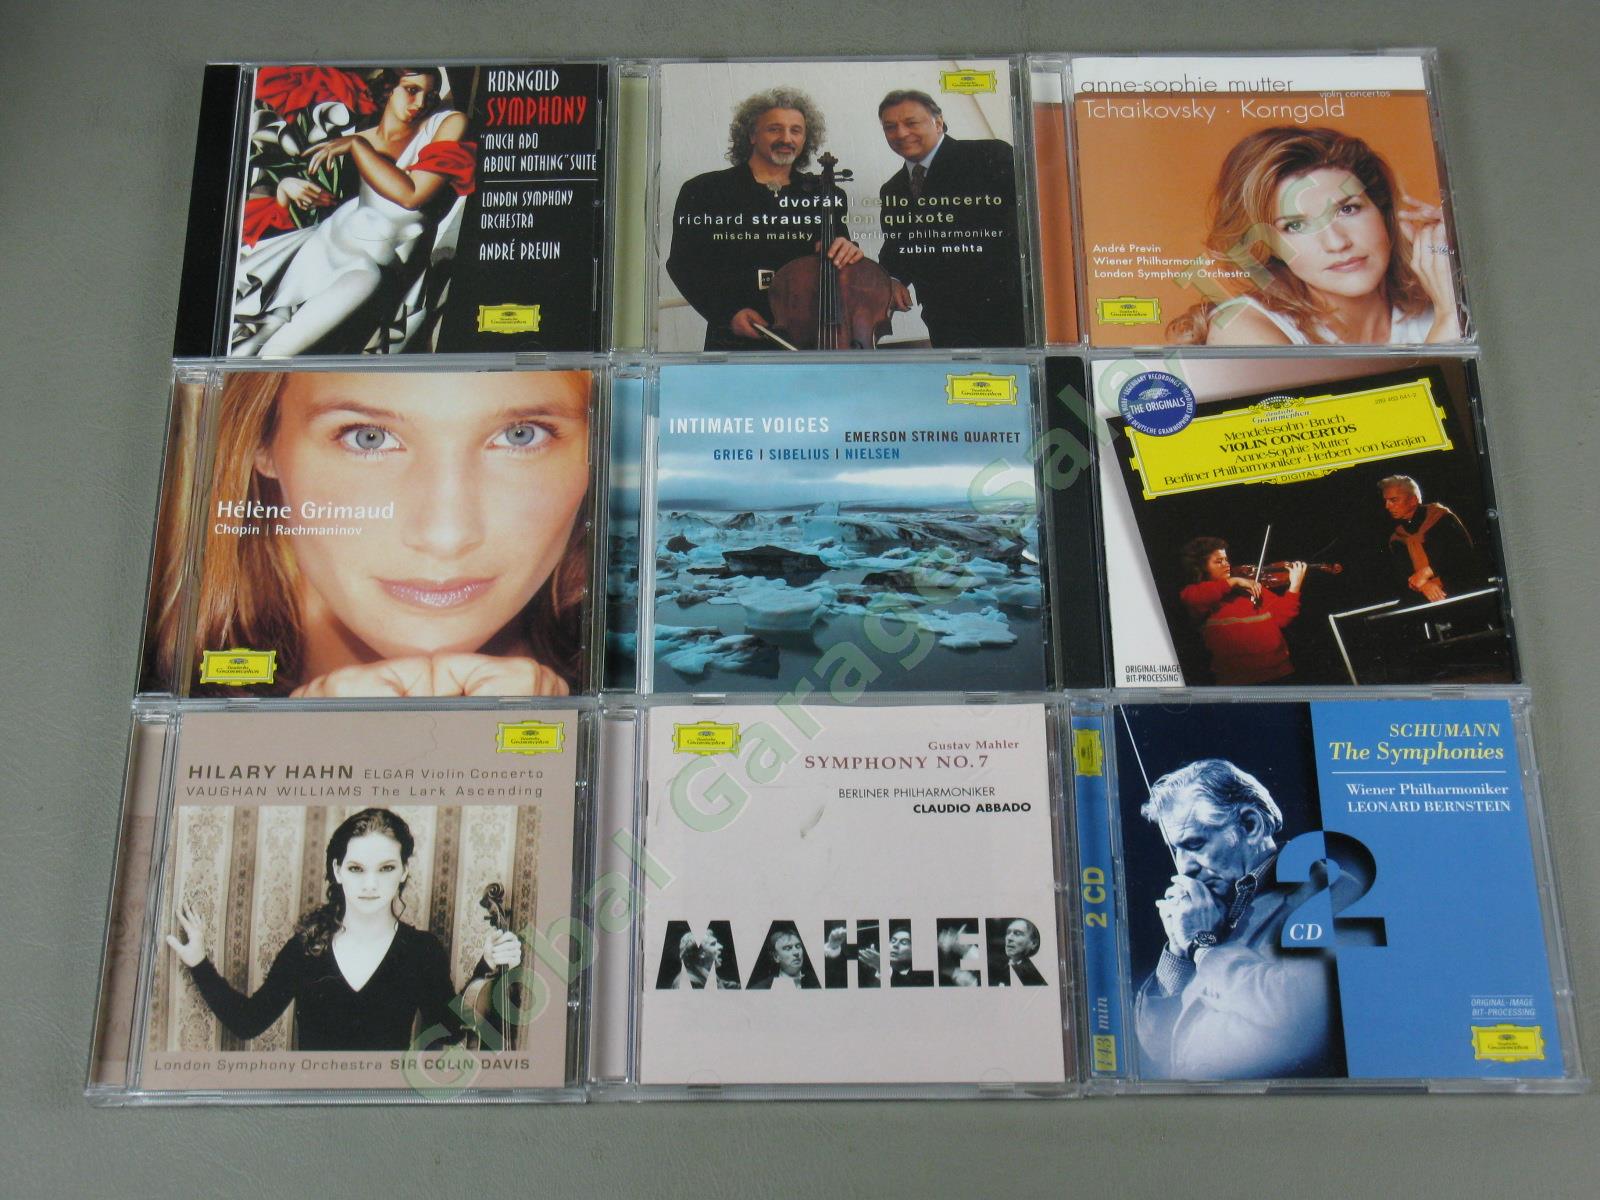 Huge Deutsche Grammophon Classical Music 45 CD Lot Brahms Mozart Liszt Dvorak NR 7